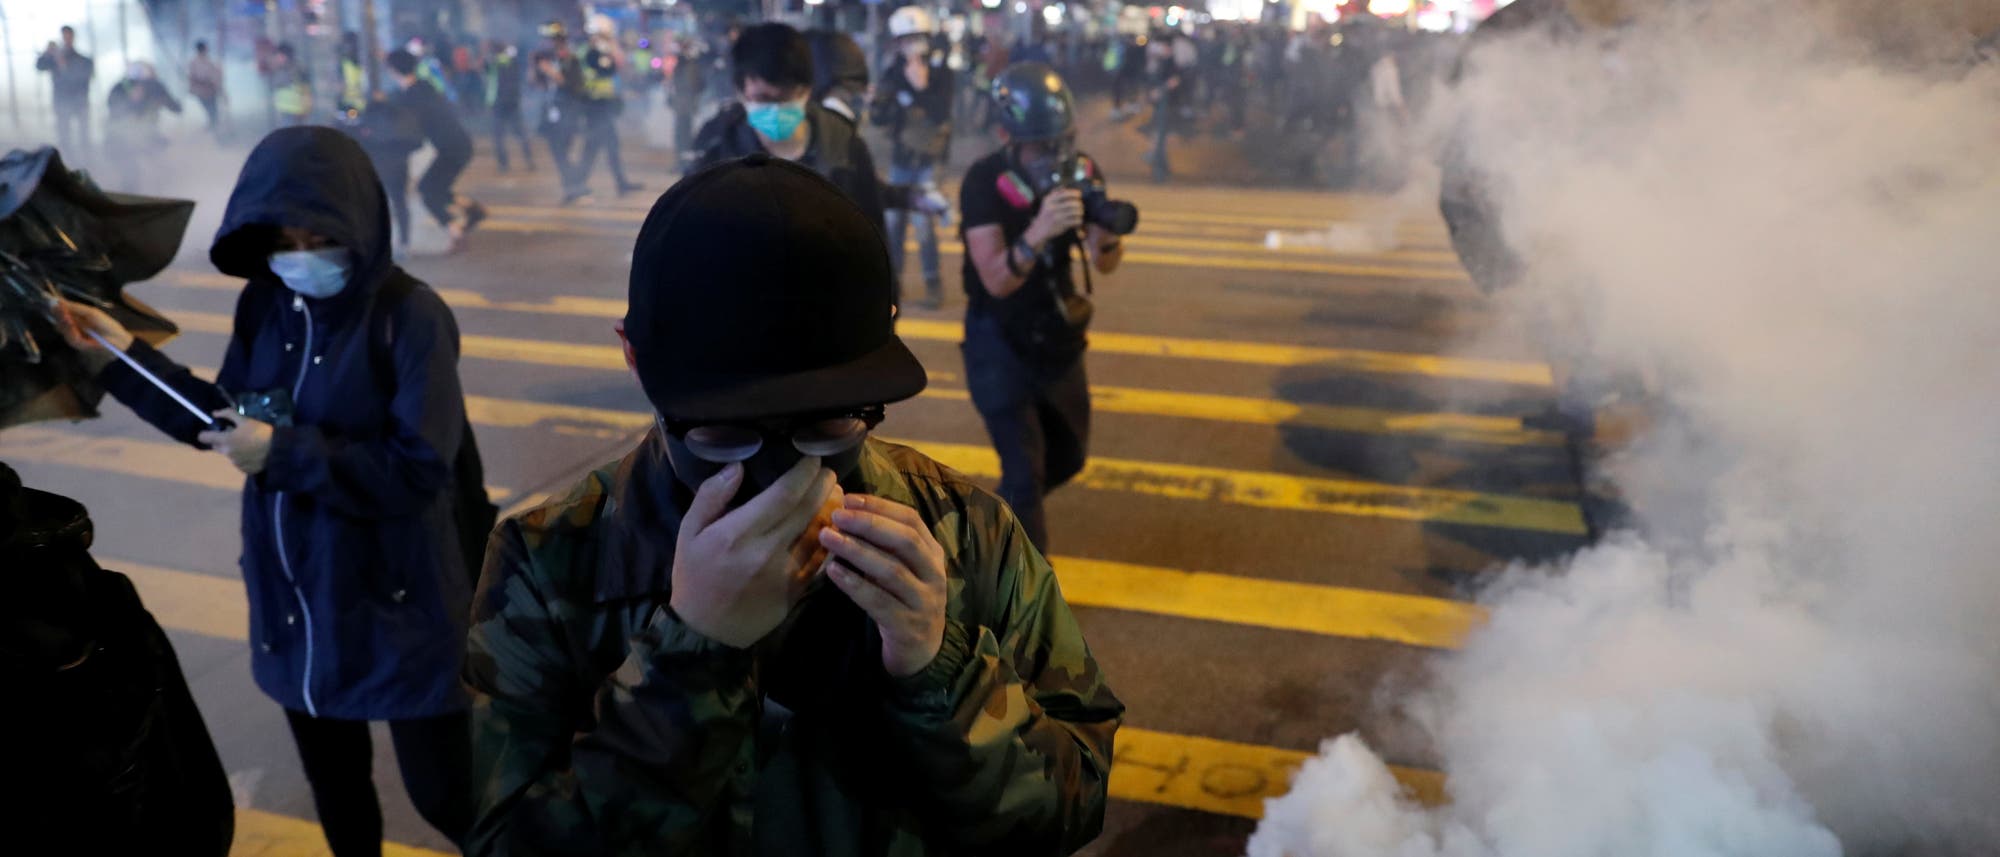 Tränengas und Demonstranten auf den Straßen Hongkongs im Dezember 2019.